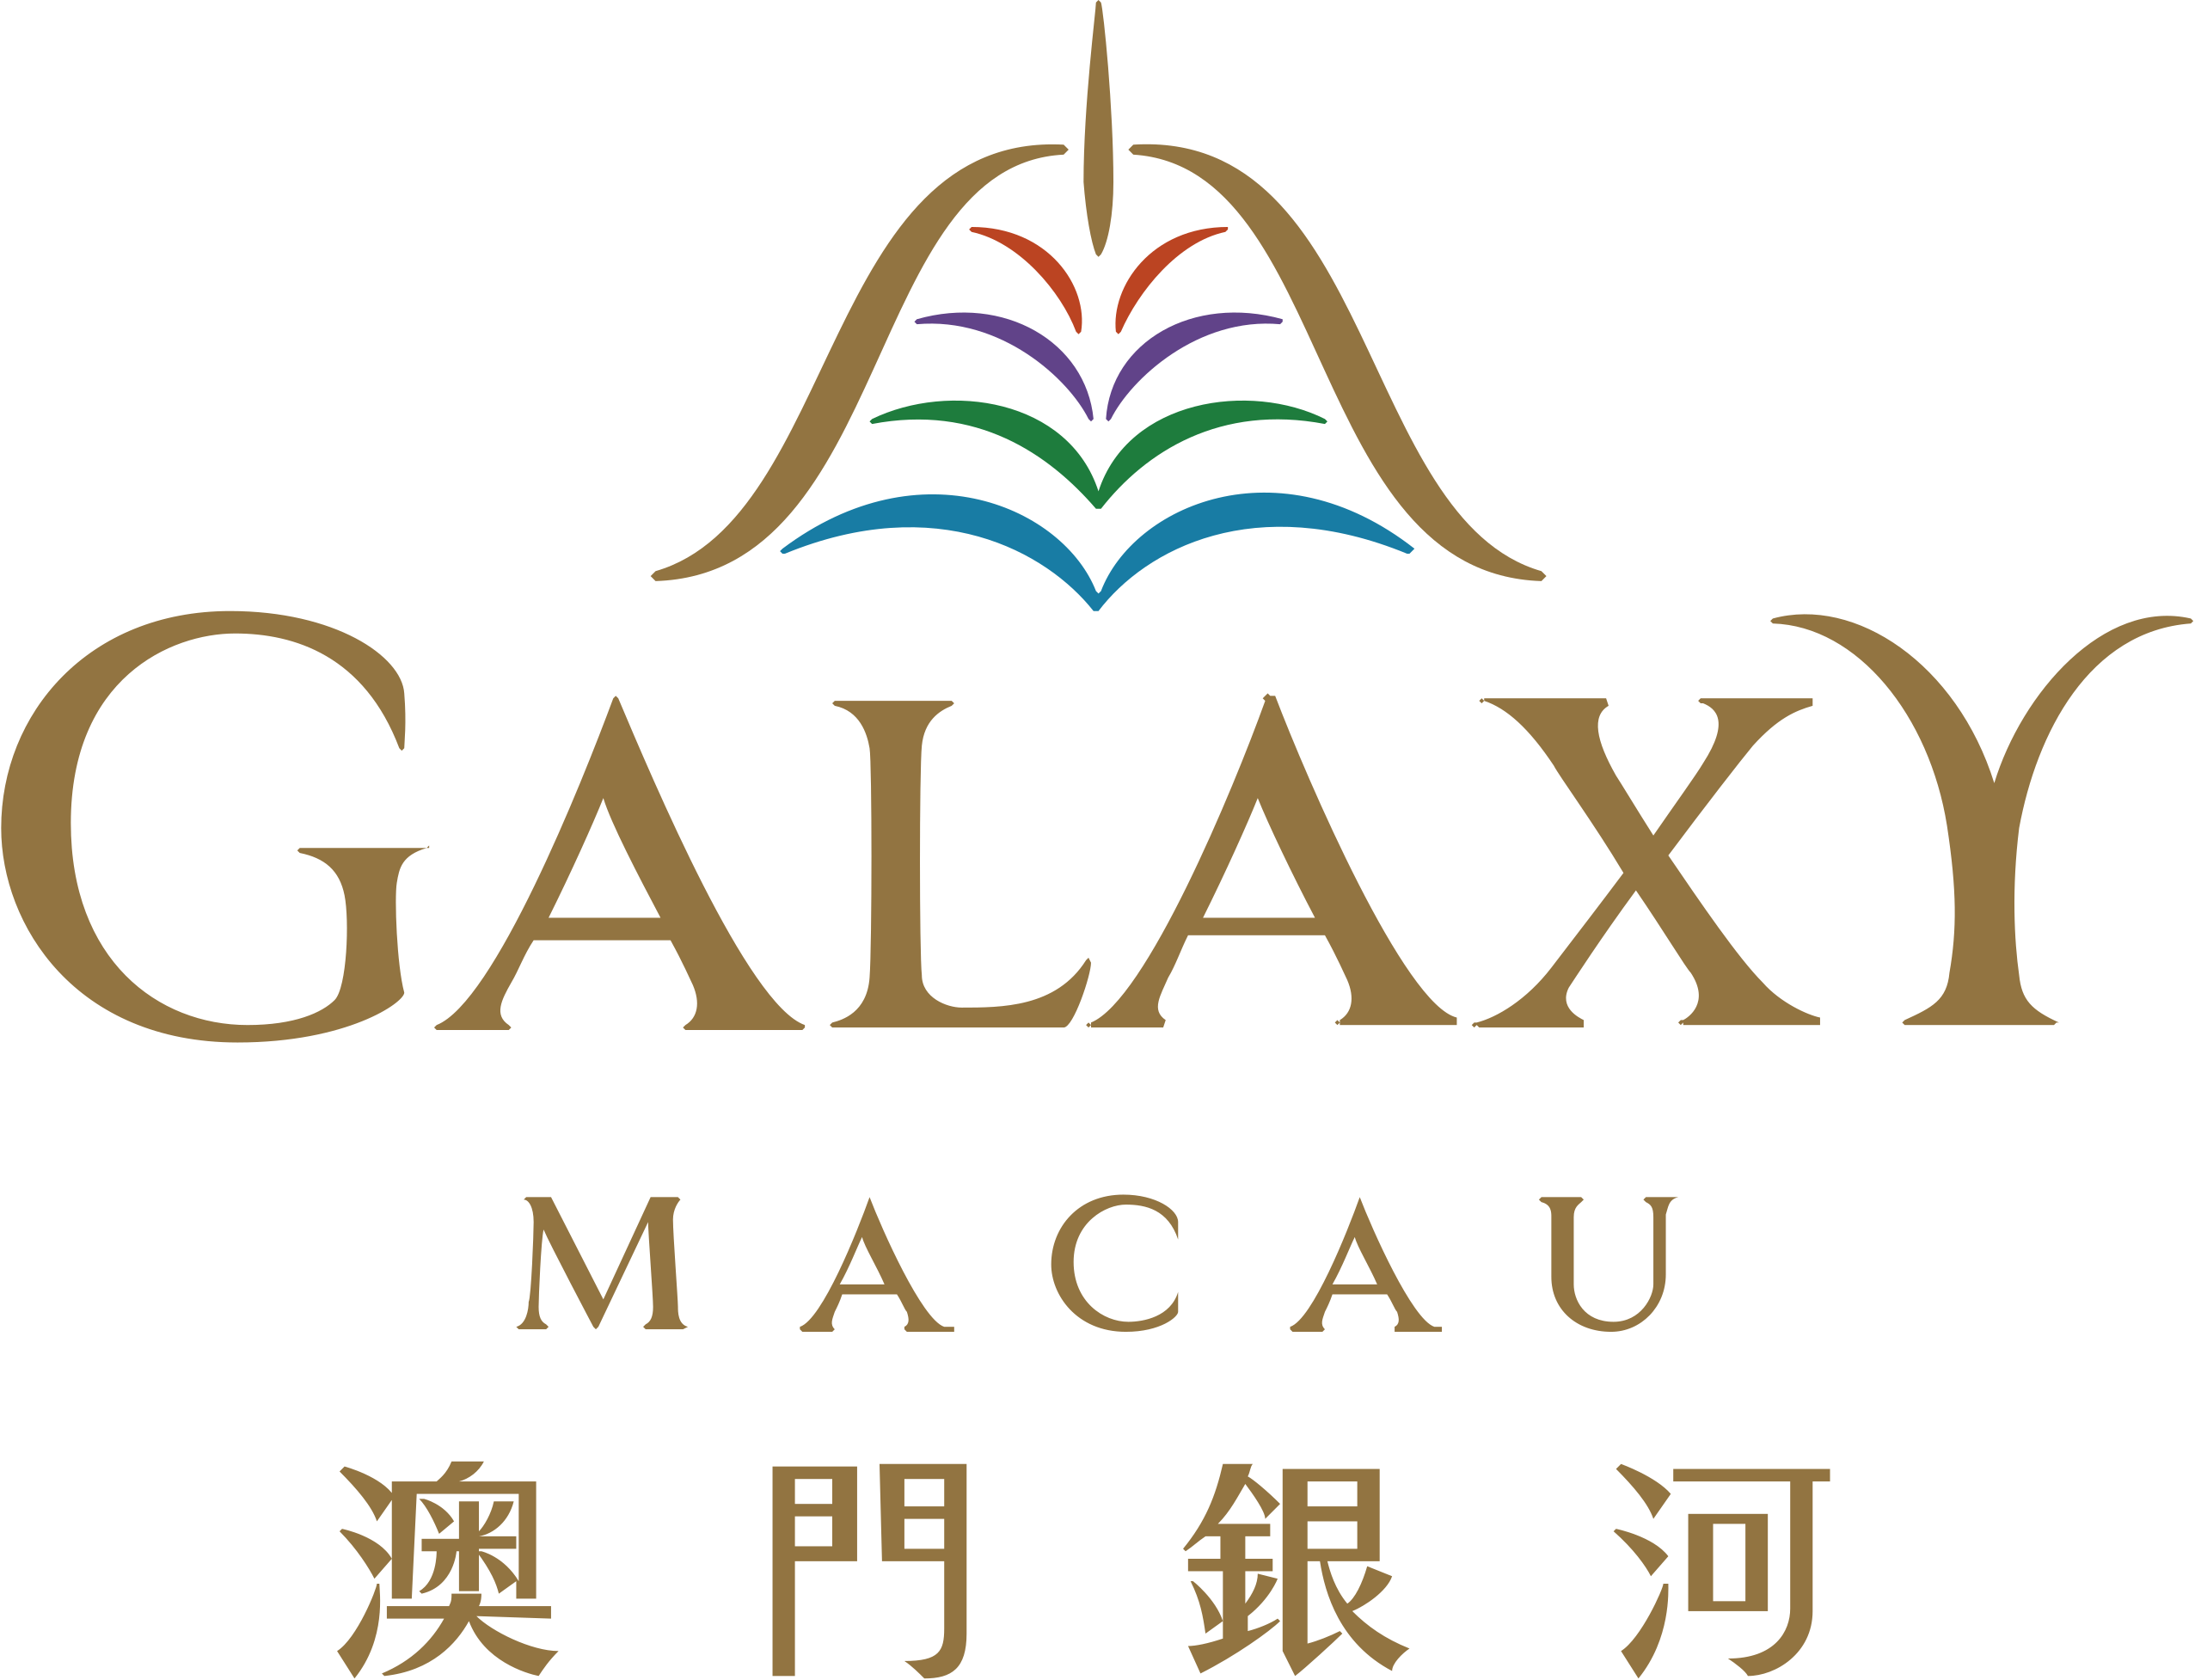 9_Galaxy_Macau_logo